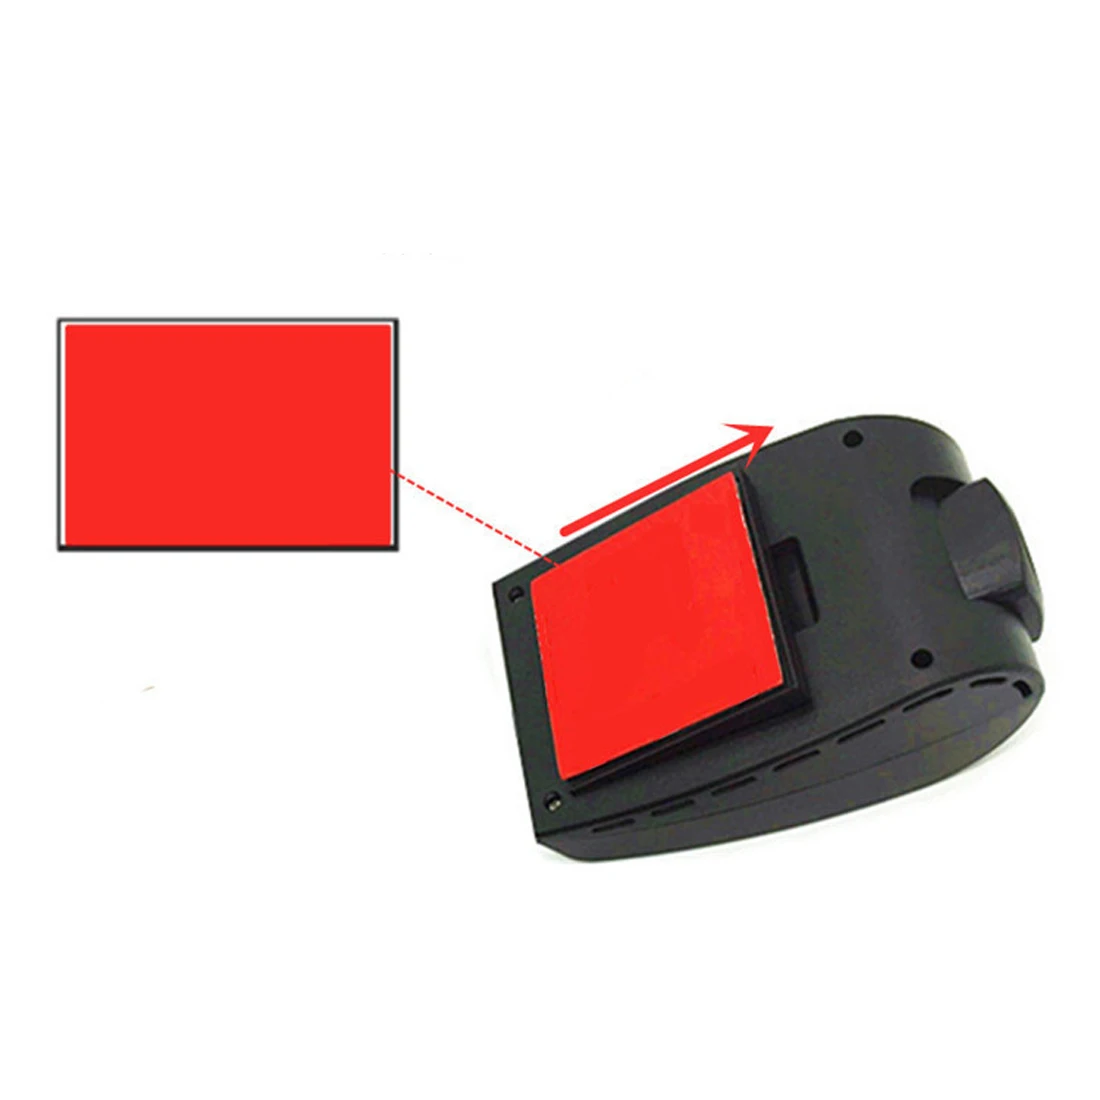 Dewtreetal Супер предложение Автомобильный видеорегистратор Камера USB dvr камера для Android 4,2/4,4/5.1.1/6.0.1 автомобильный ПК DVR камера рекордер вождения